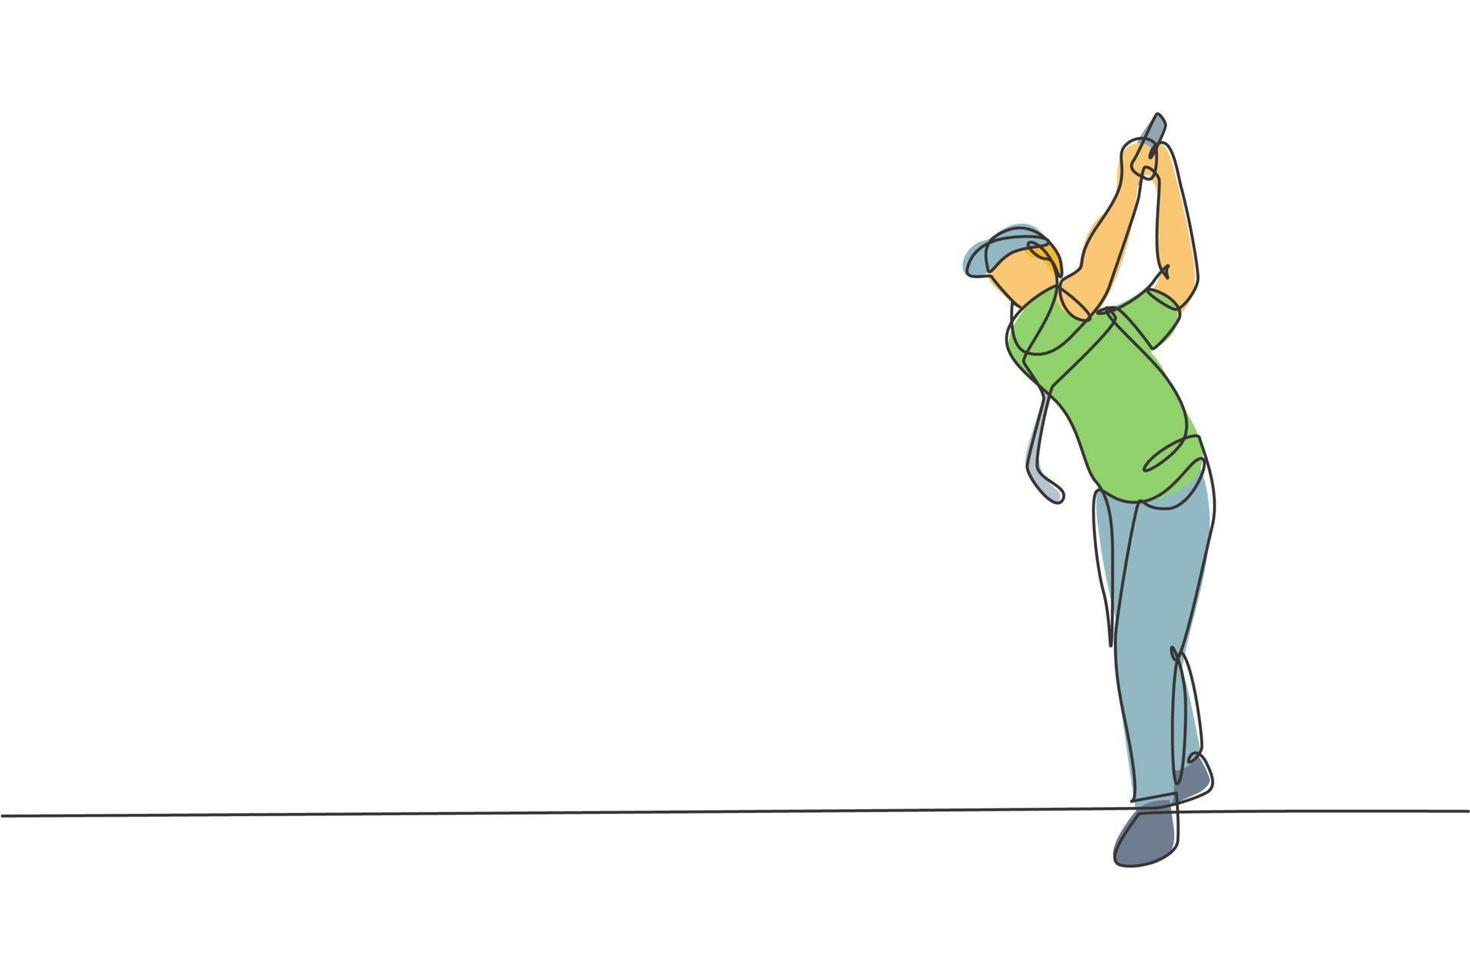 een doorlopende lijntekening van een jonge golfspeler die golfclub zwaait en de bal raakt. vrijetijdssport concept. dynamische enkele lijn tekenen ontwerp vector illustratie afbeelding voor toernooi promotie media